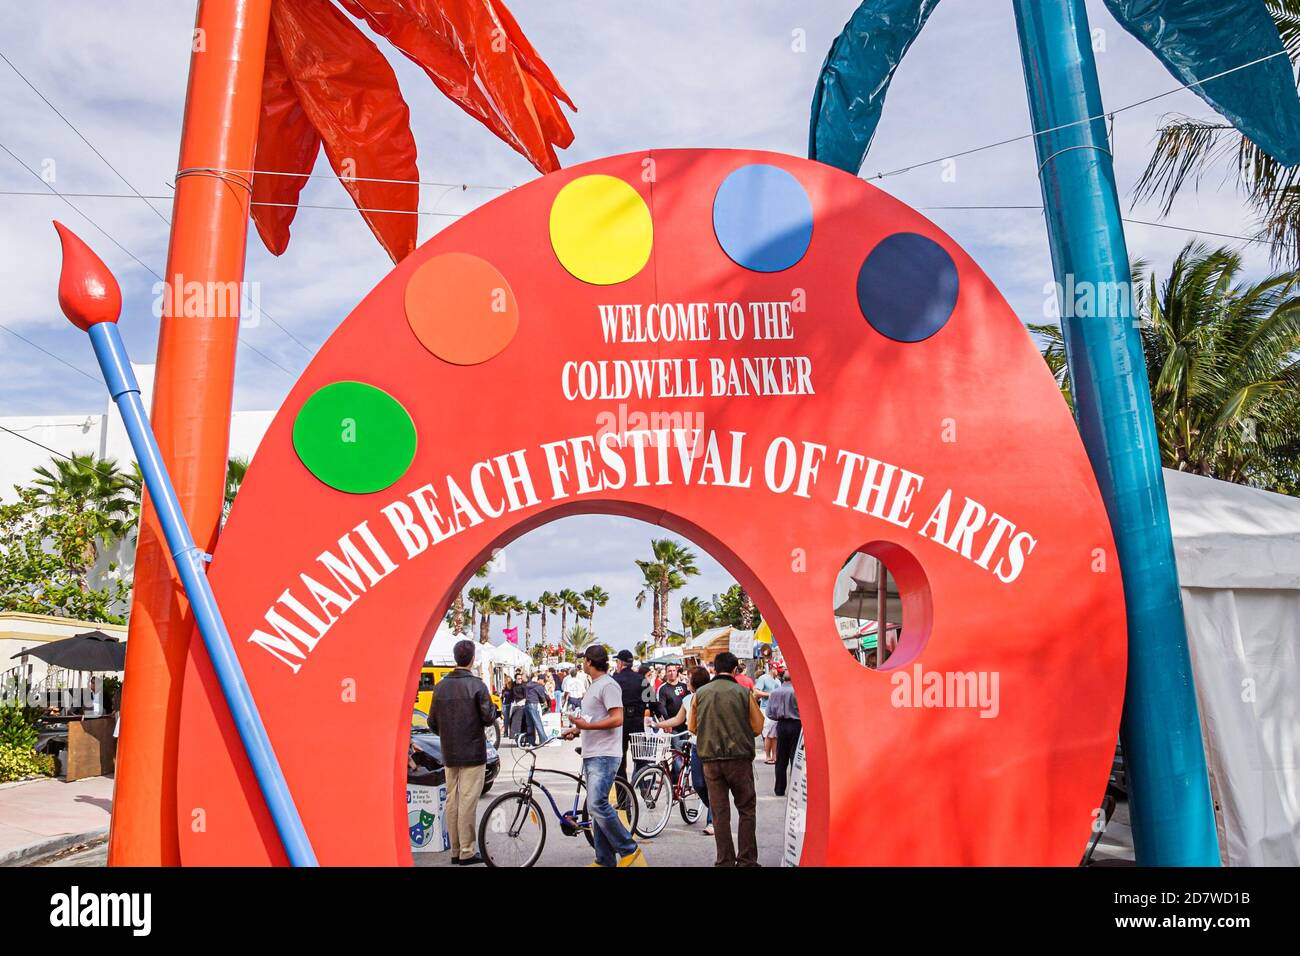 Miami Beach Florida, Festival der Künste, Eingang Bogen Schild Straßenmesse jährliche Veranstaltung Kunst Kunst Kunst, Stockfoto